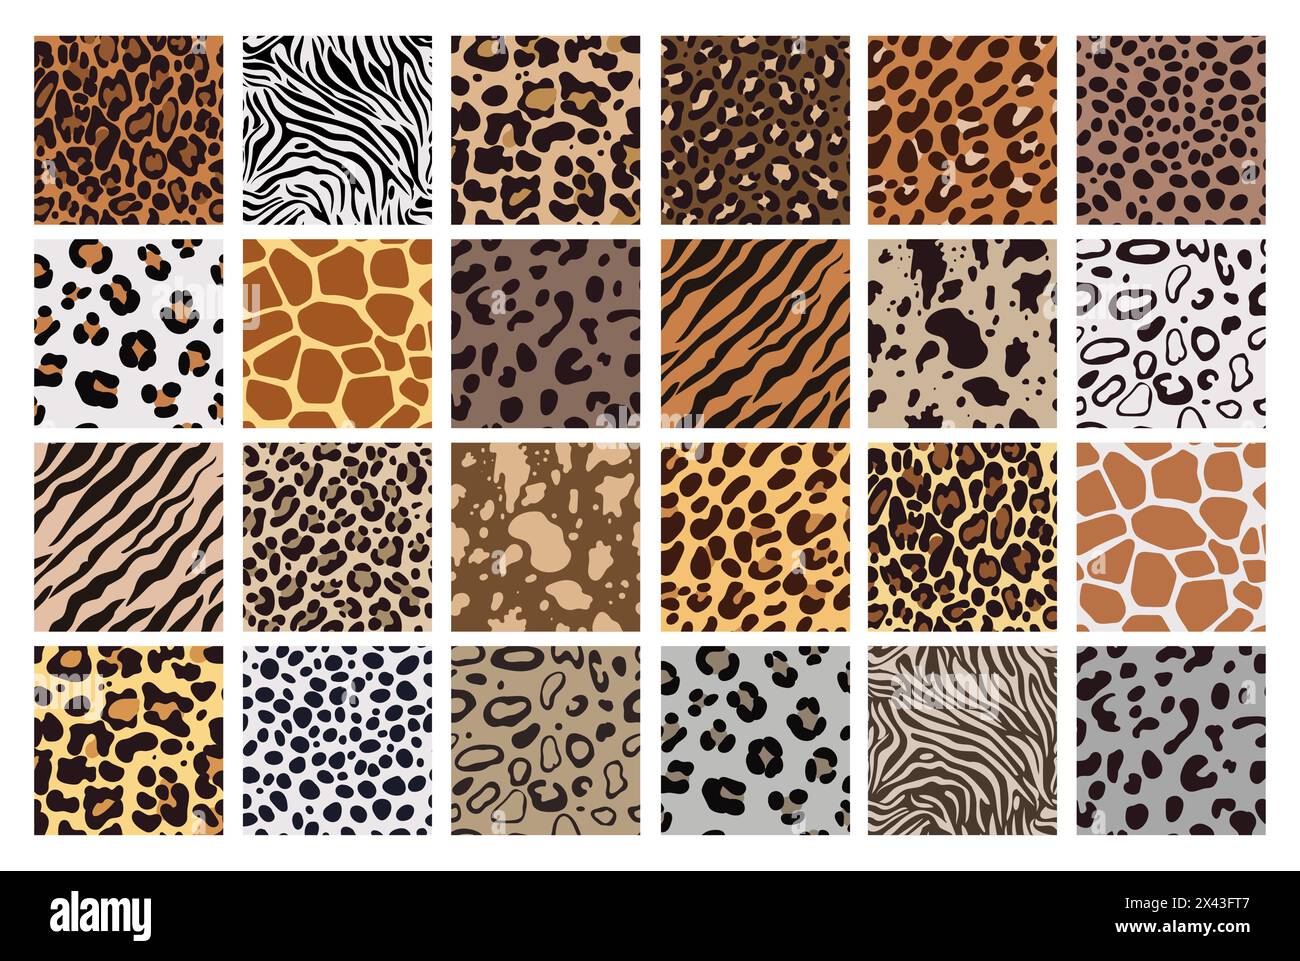 Imprimé animal. Motifs Safari, texture de peau de tigre. Girafe sauvage, zèbre léopard ou fourrure de jaguar, rayures de zoo. Textiles de couleurs naturelles, papier d'emballage, conception de papier peint. Impression pour tissu. Arrière-plan vectoriel Illustration de Vecteur